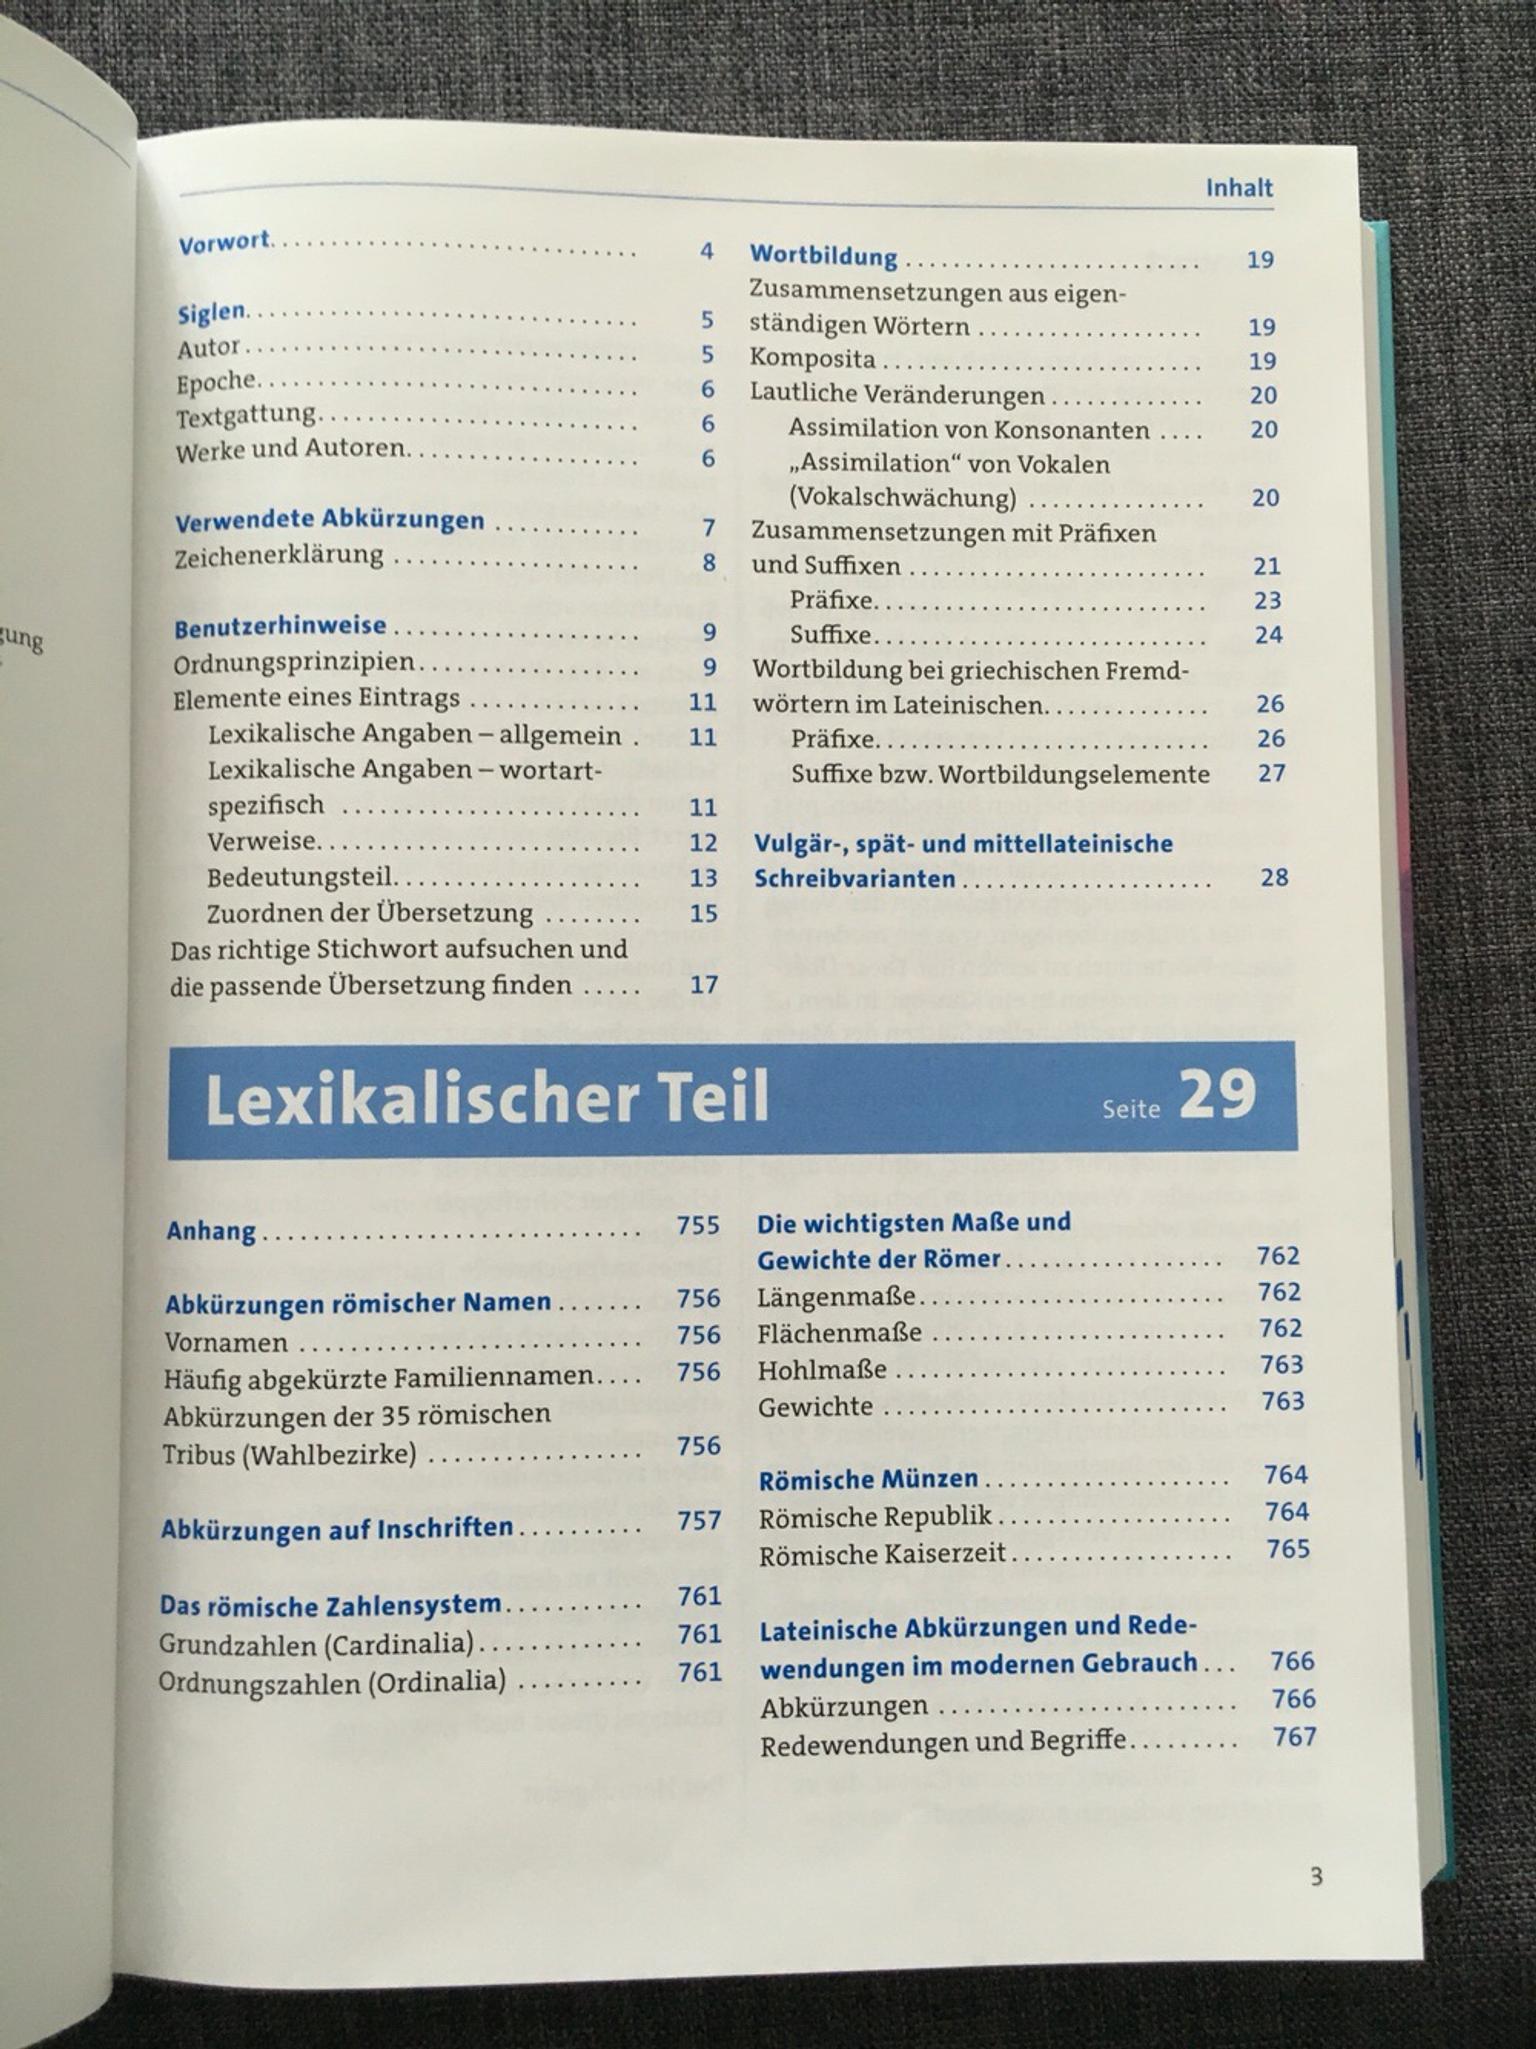 Lateinisch-deutsches Schulwörterbuch Stowasser Neubearbeitung